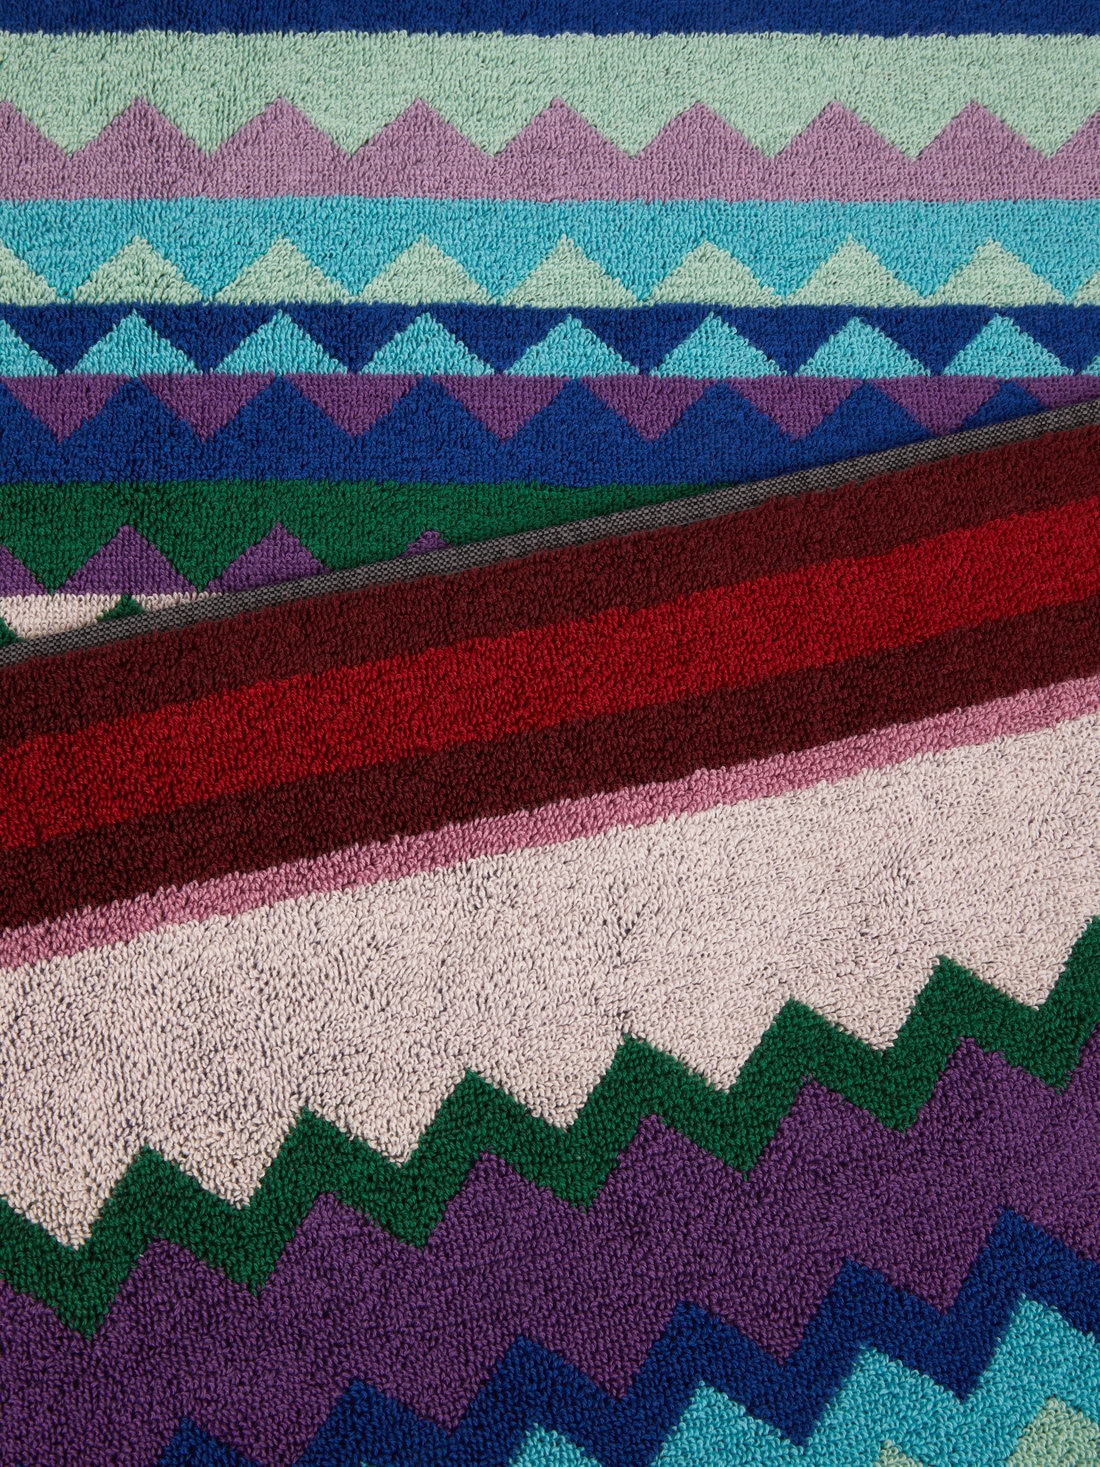 Strandtuch Chantal 100x180 cm aus Baumwollfrottee mit Chevronmuster, Mehrfarbig  - 8051575827822 - 2